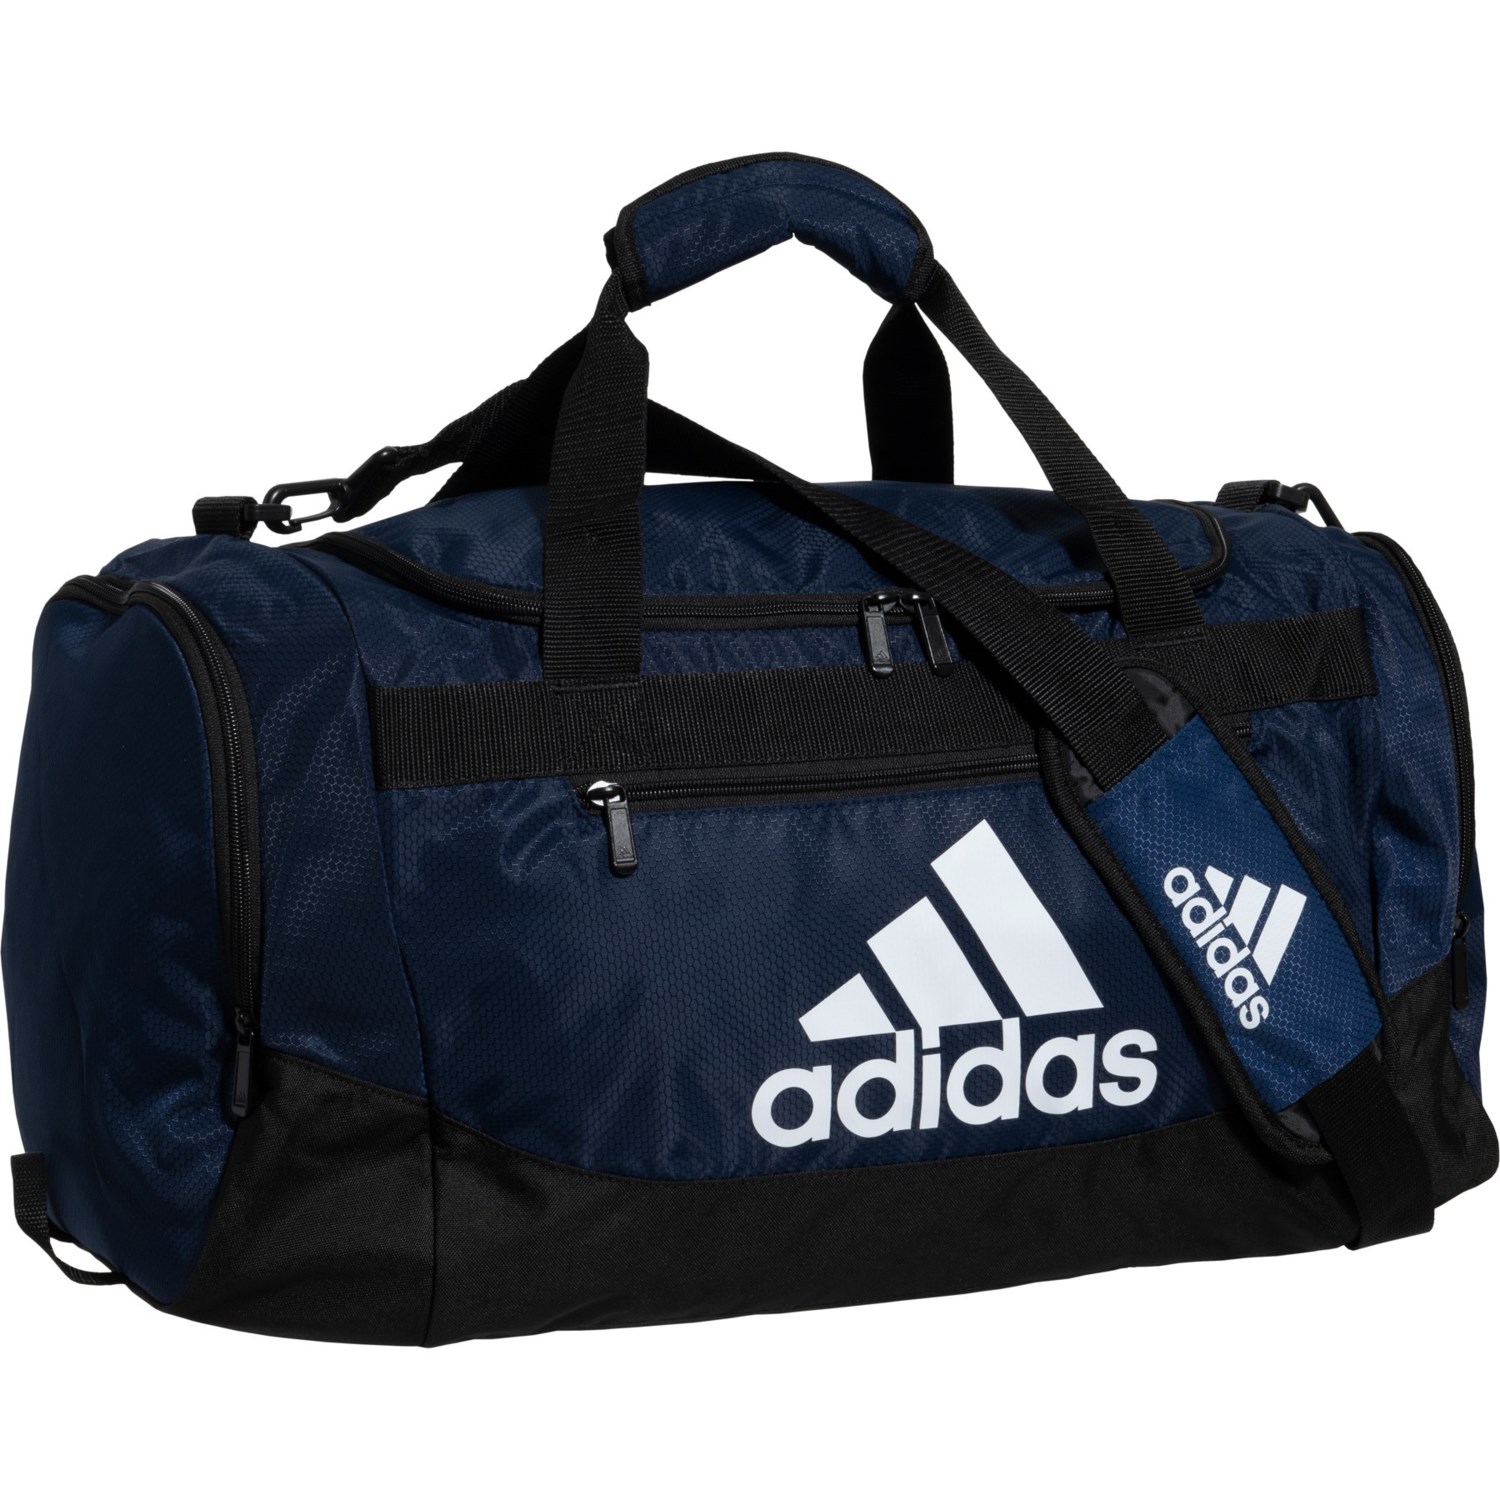 Adidas Defense 2 Duffel Bag - Medium